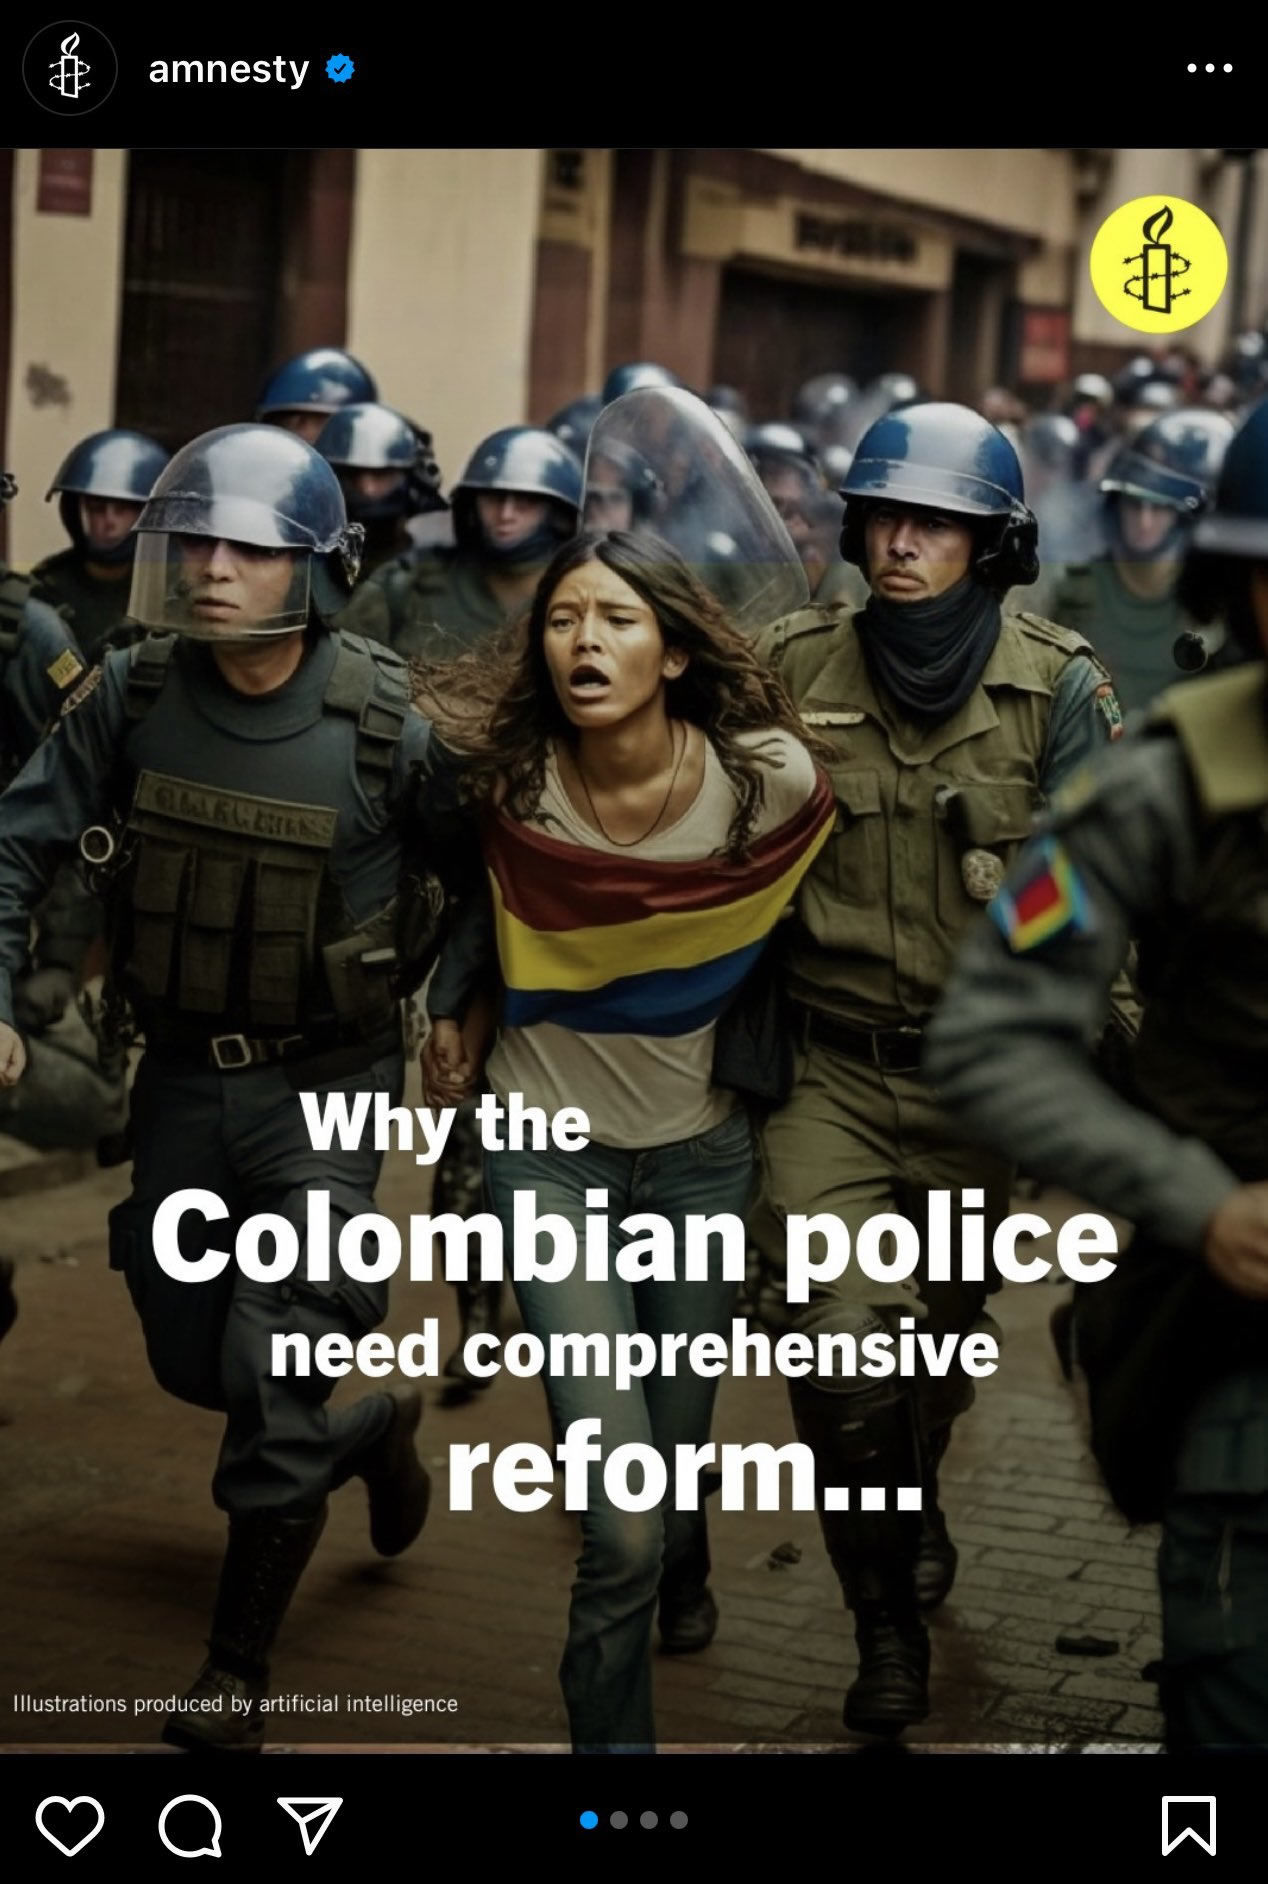 Amnesty отказалась от изображений колумбийских протестов, созданных искусственным интеллектом, после критики